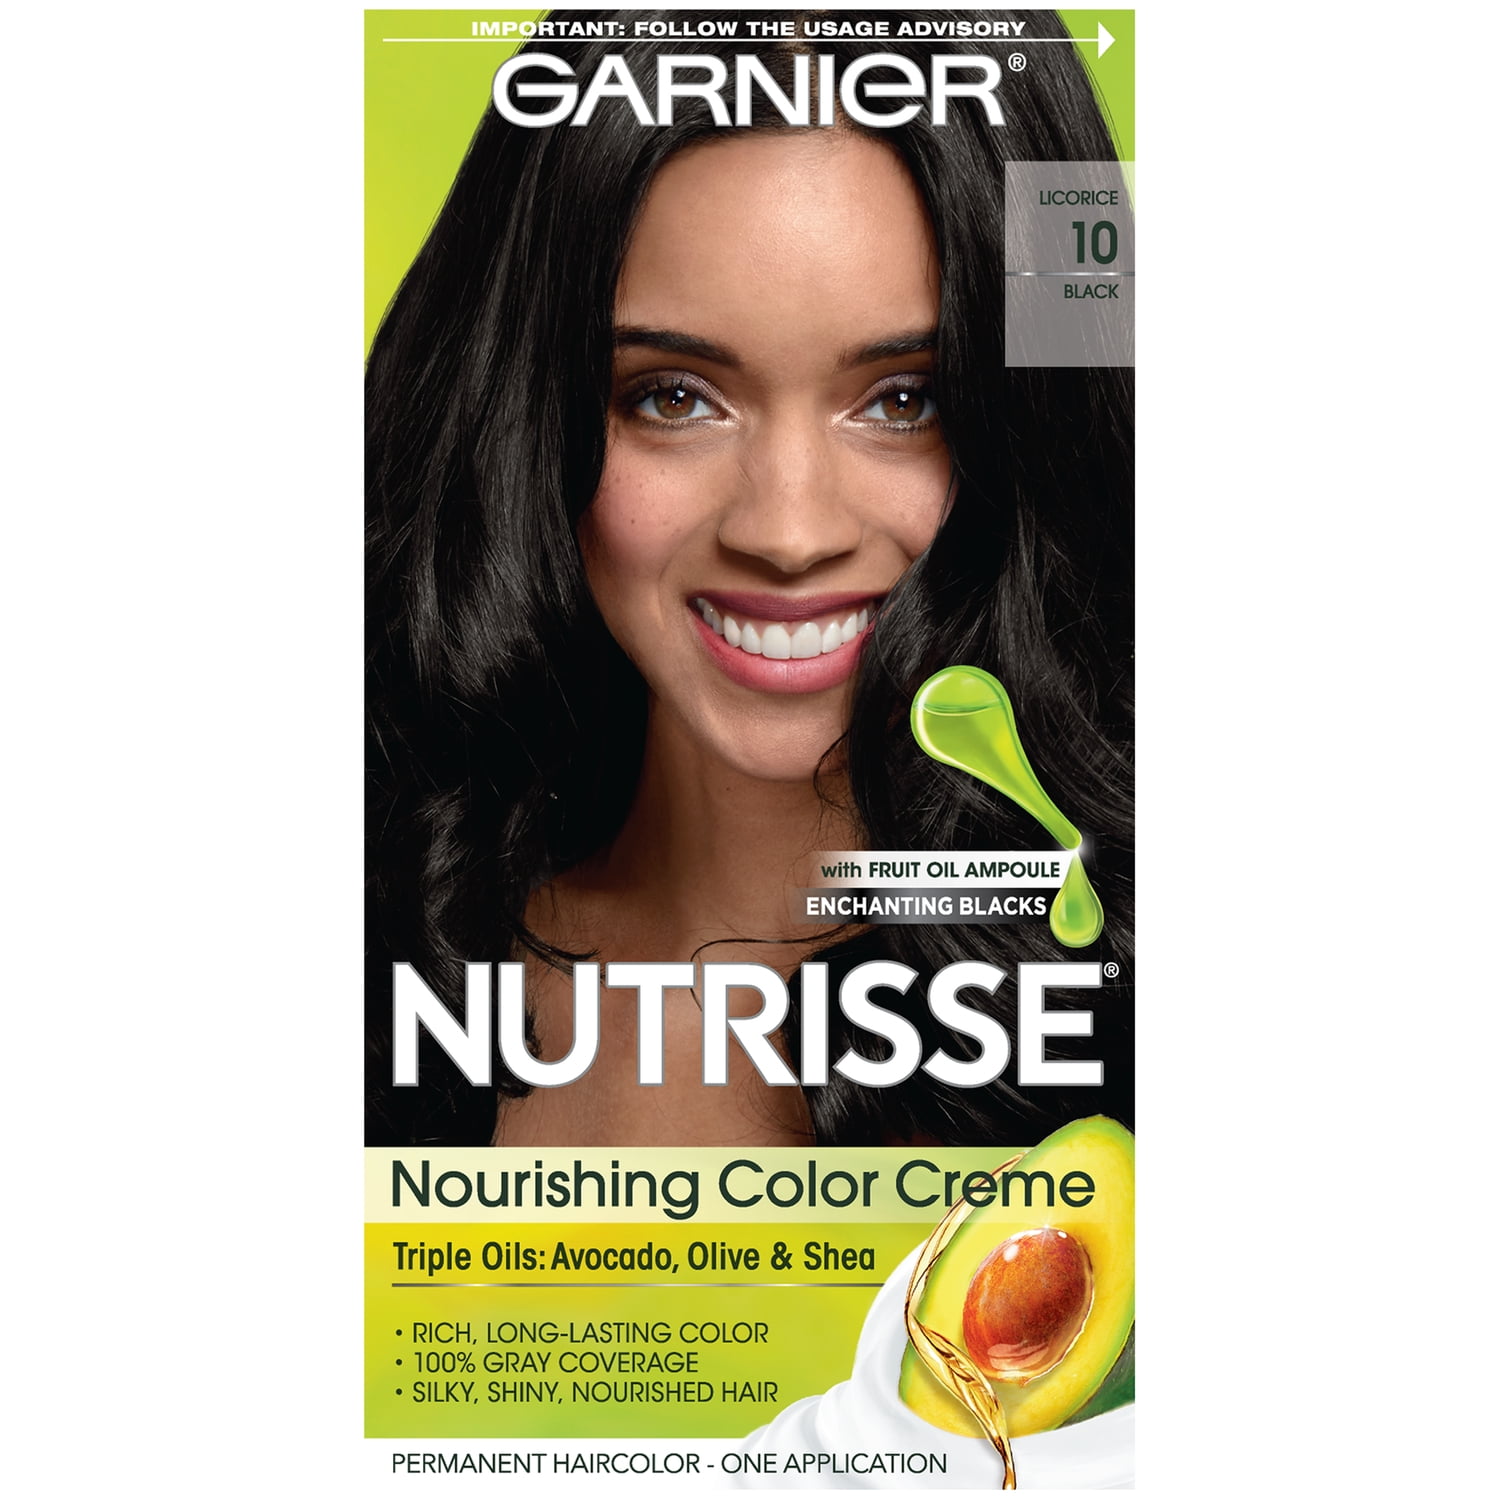 Garnier Nutrisse Nourishing Hair Color Creme, 10 Black (Licorice), 1 Kit